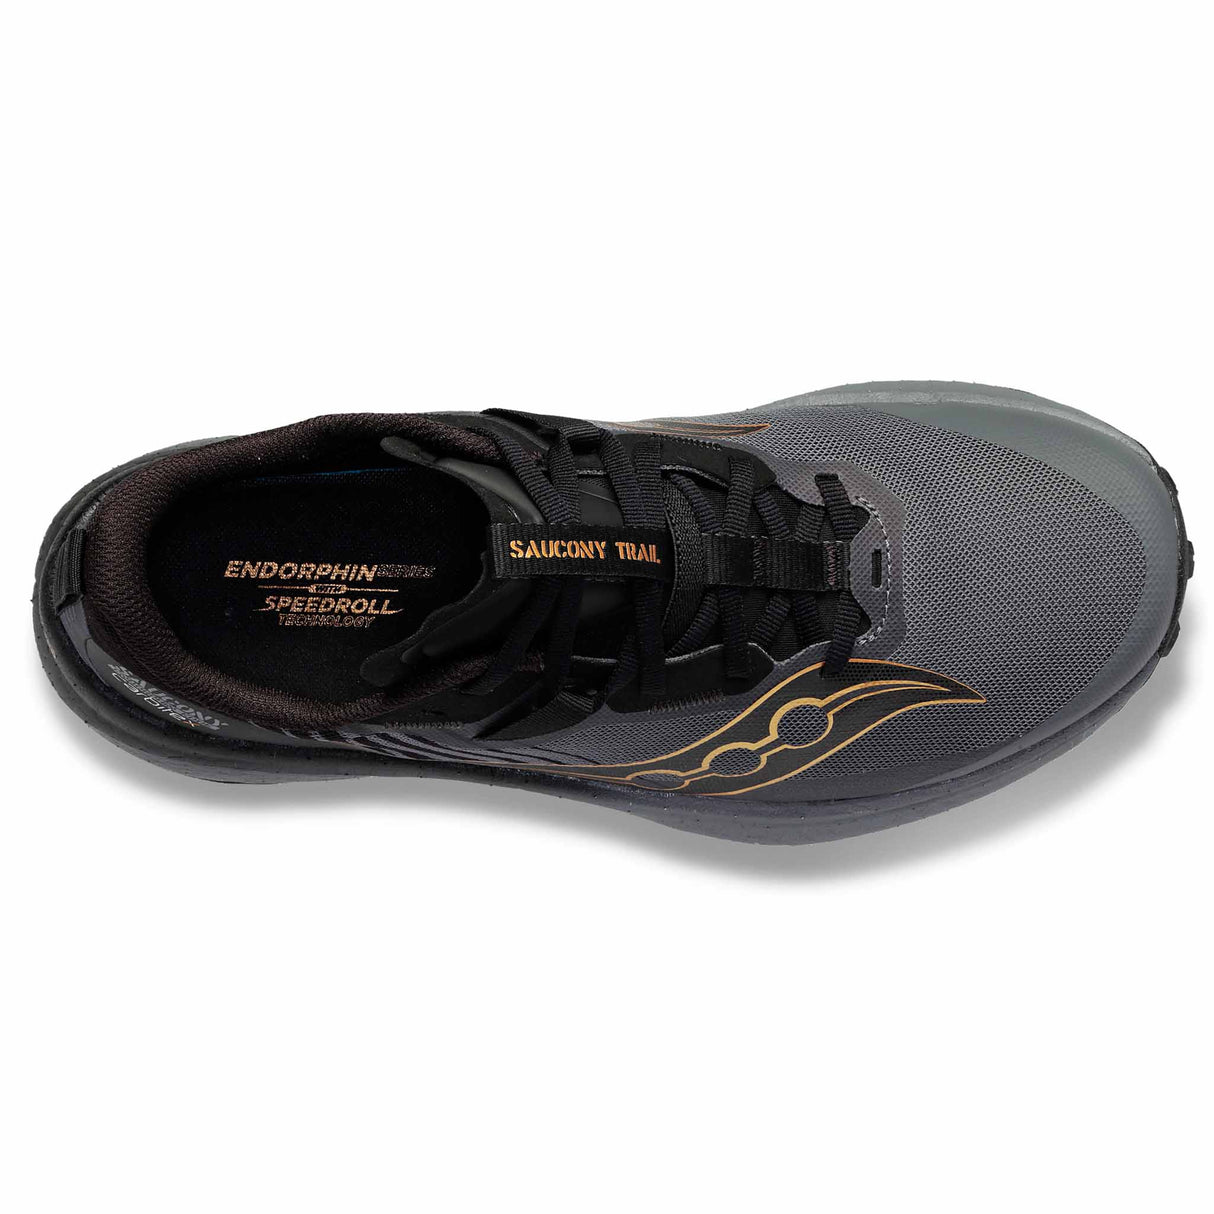 Saucony Endorphin Edge chaussures de course a pied trail homme - Black / Goldstruck